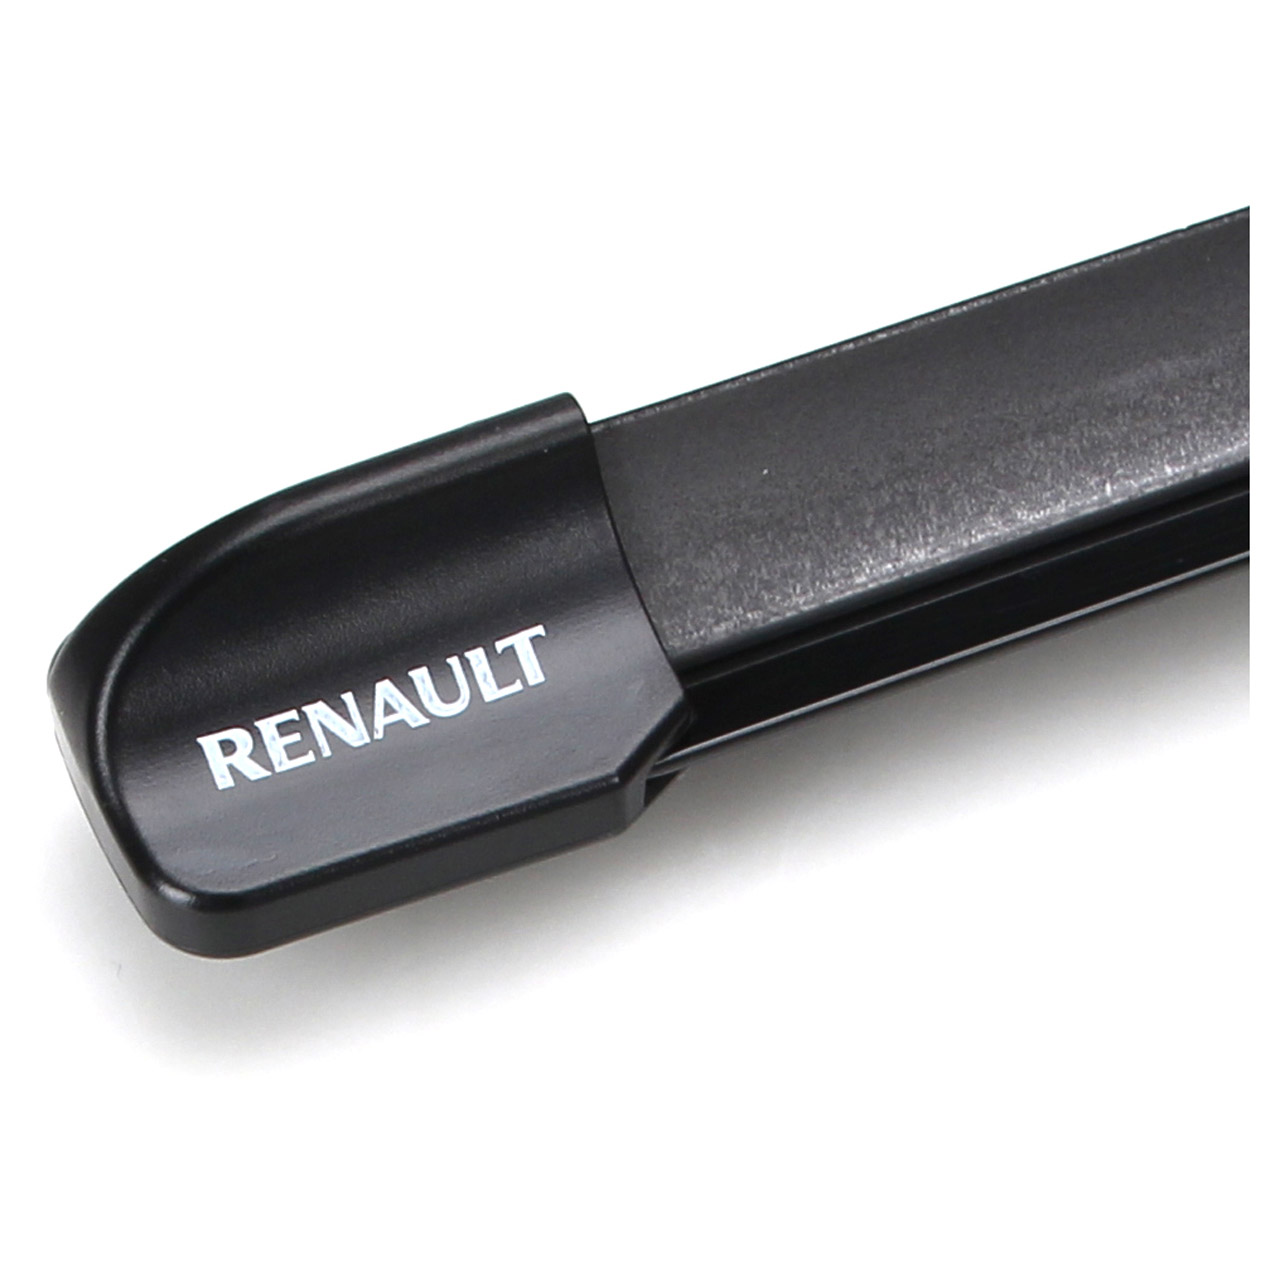 ORIGINAL Renault Scheibenwischer Wischerblätter Flex Satz Twingo II 288905309R